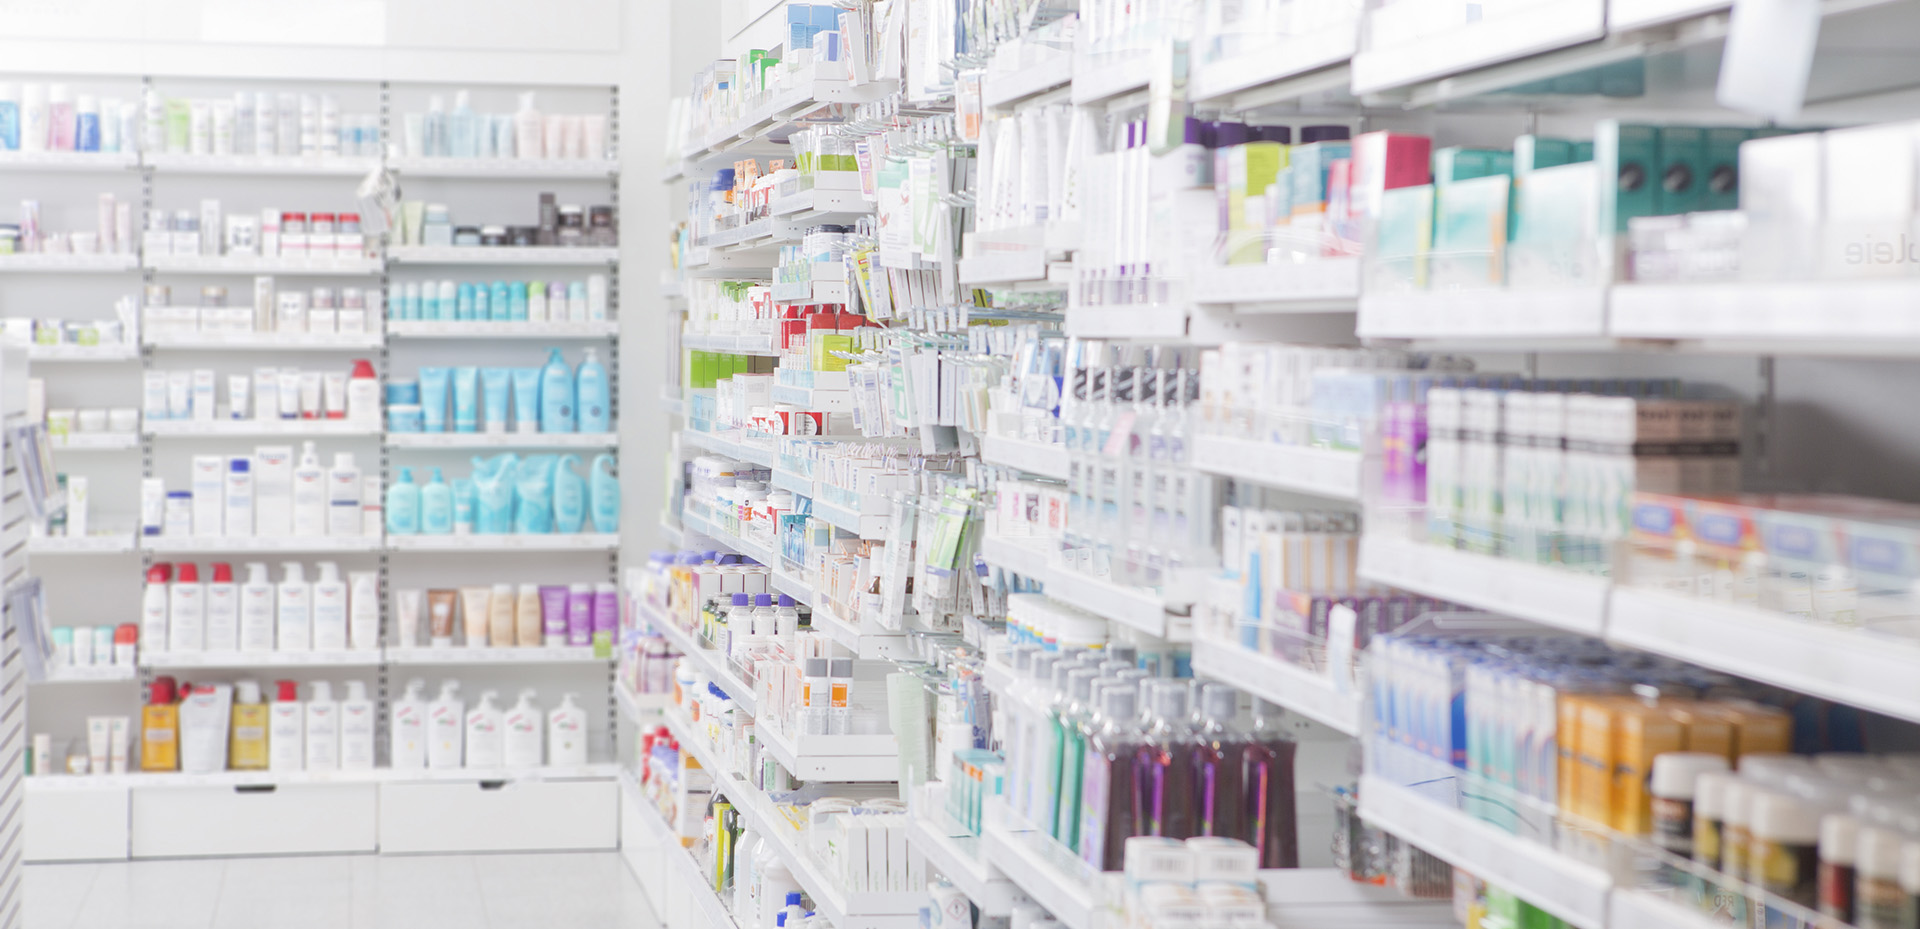 alba pharmaceuticals - distribuidor medicamentos uso humano y veterinario castellon farmacia parafarmacia